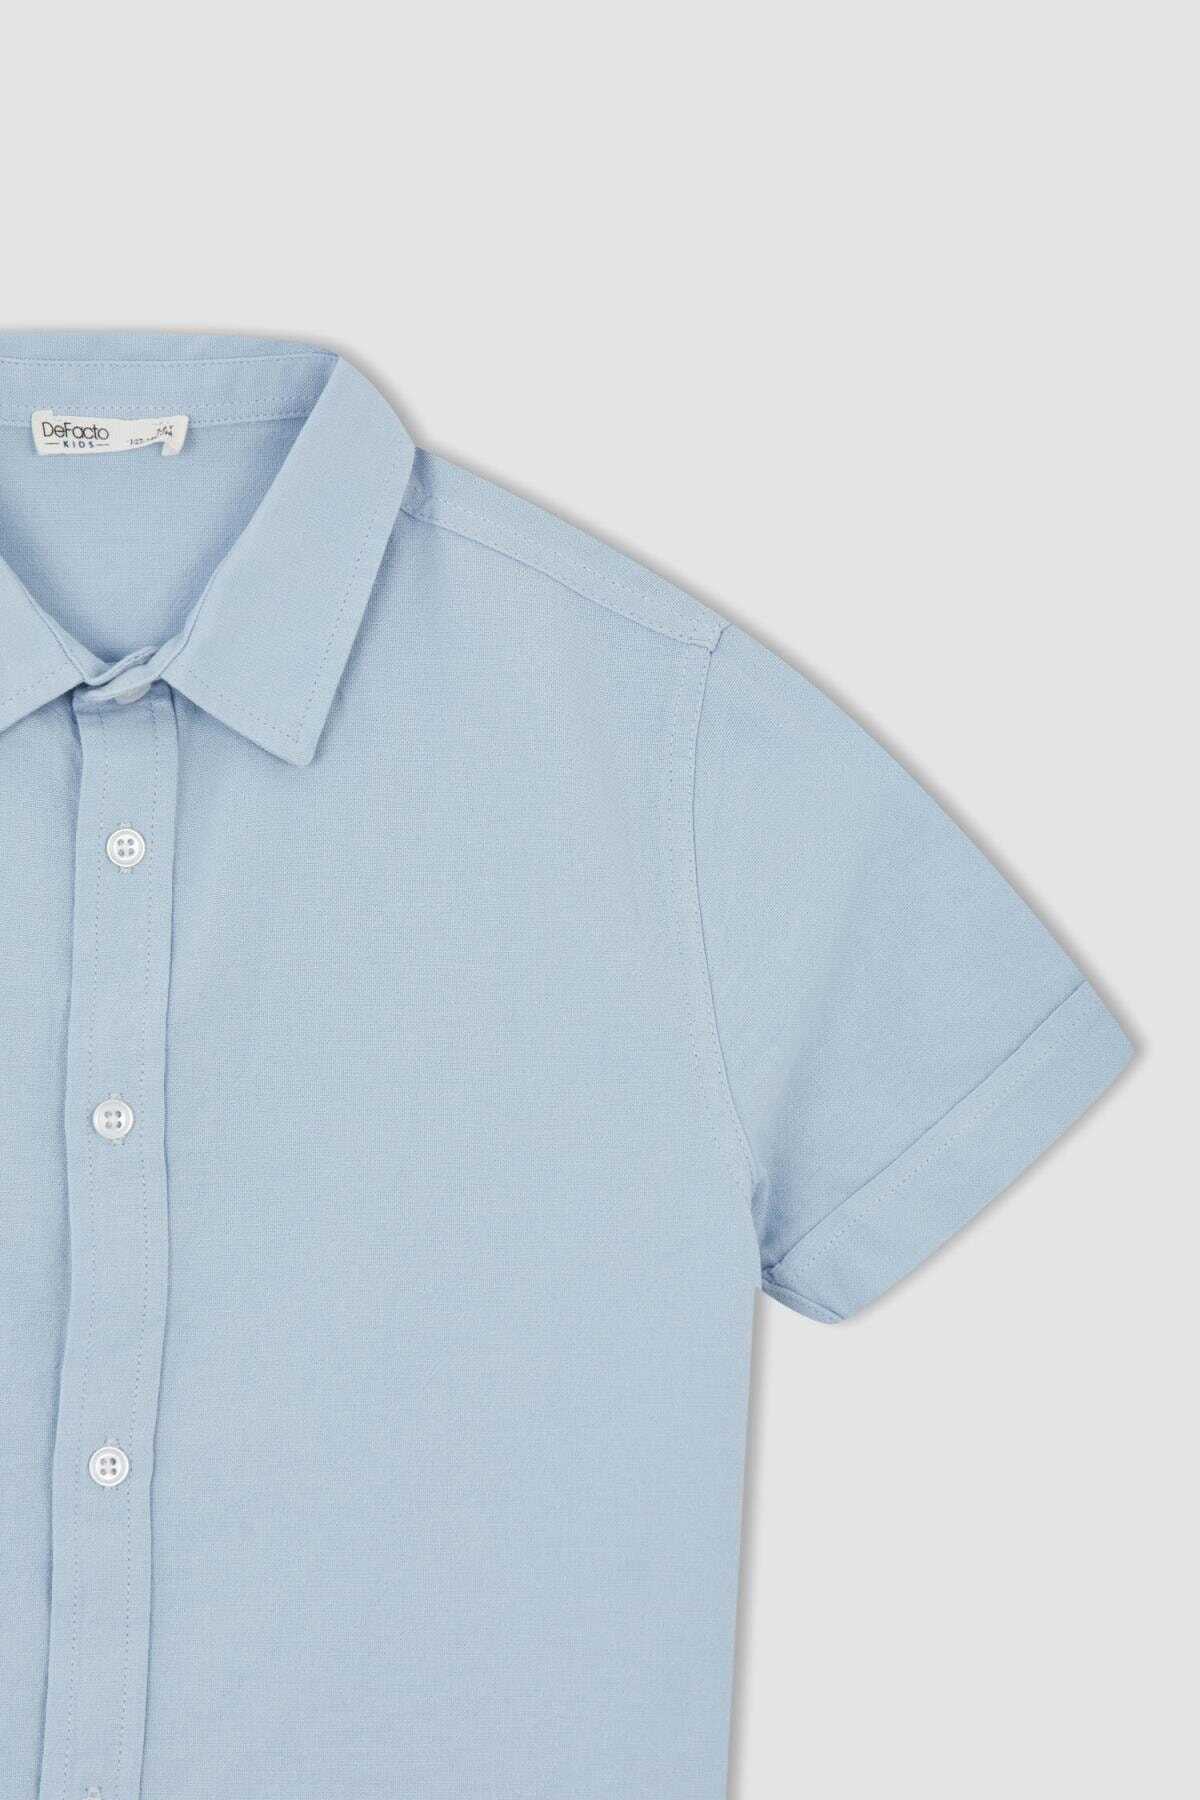 پیراهن بچه گانه پسرانه آستین کوتاه دکمه ای آبی برند DeFacto